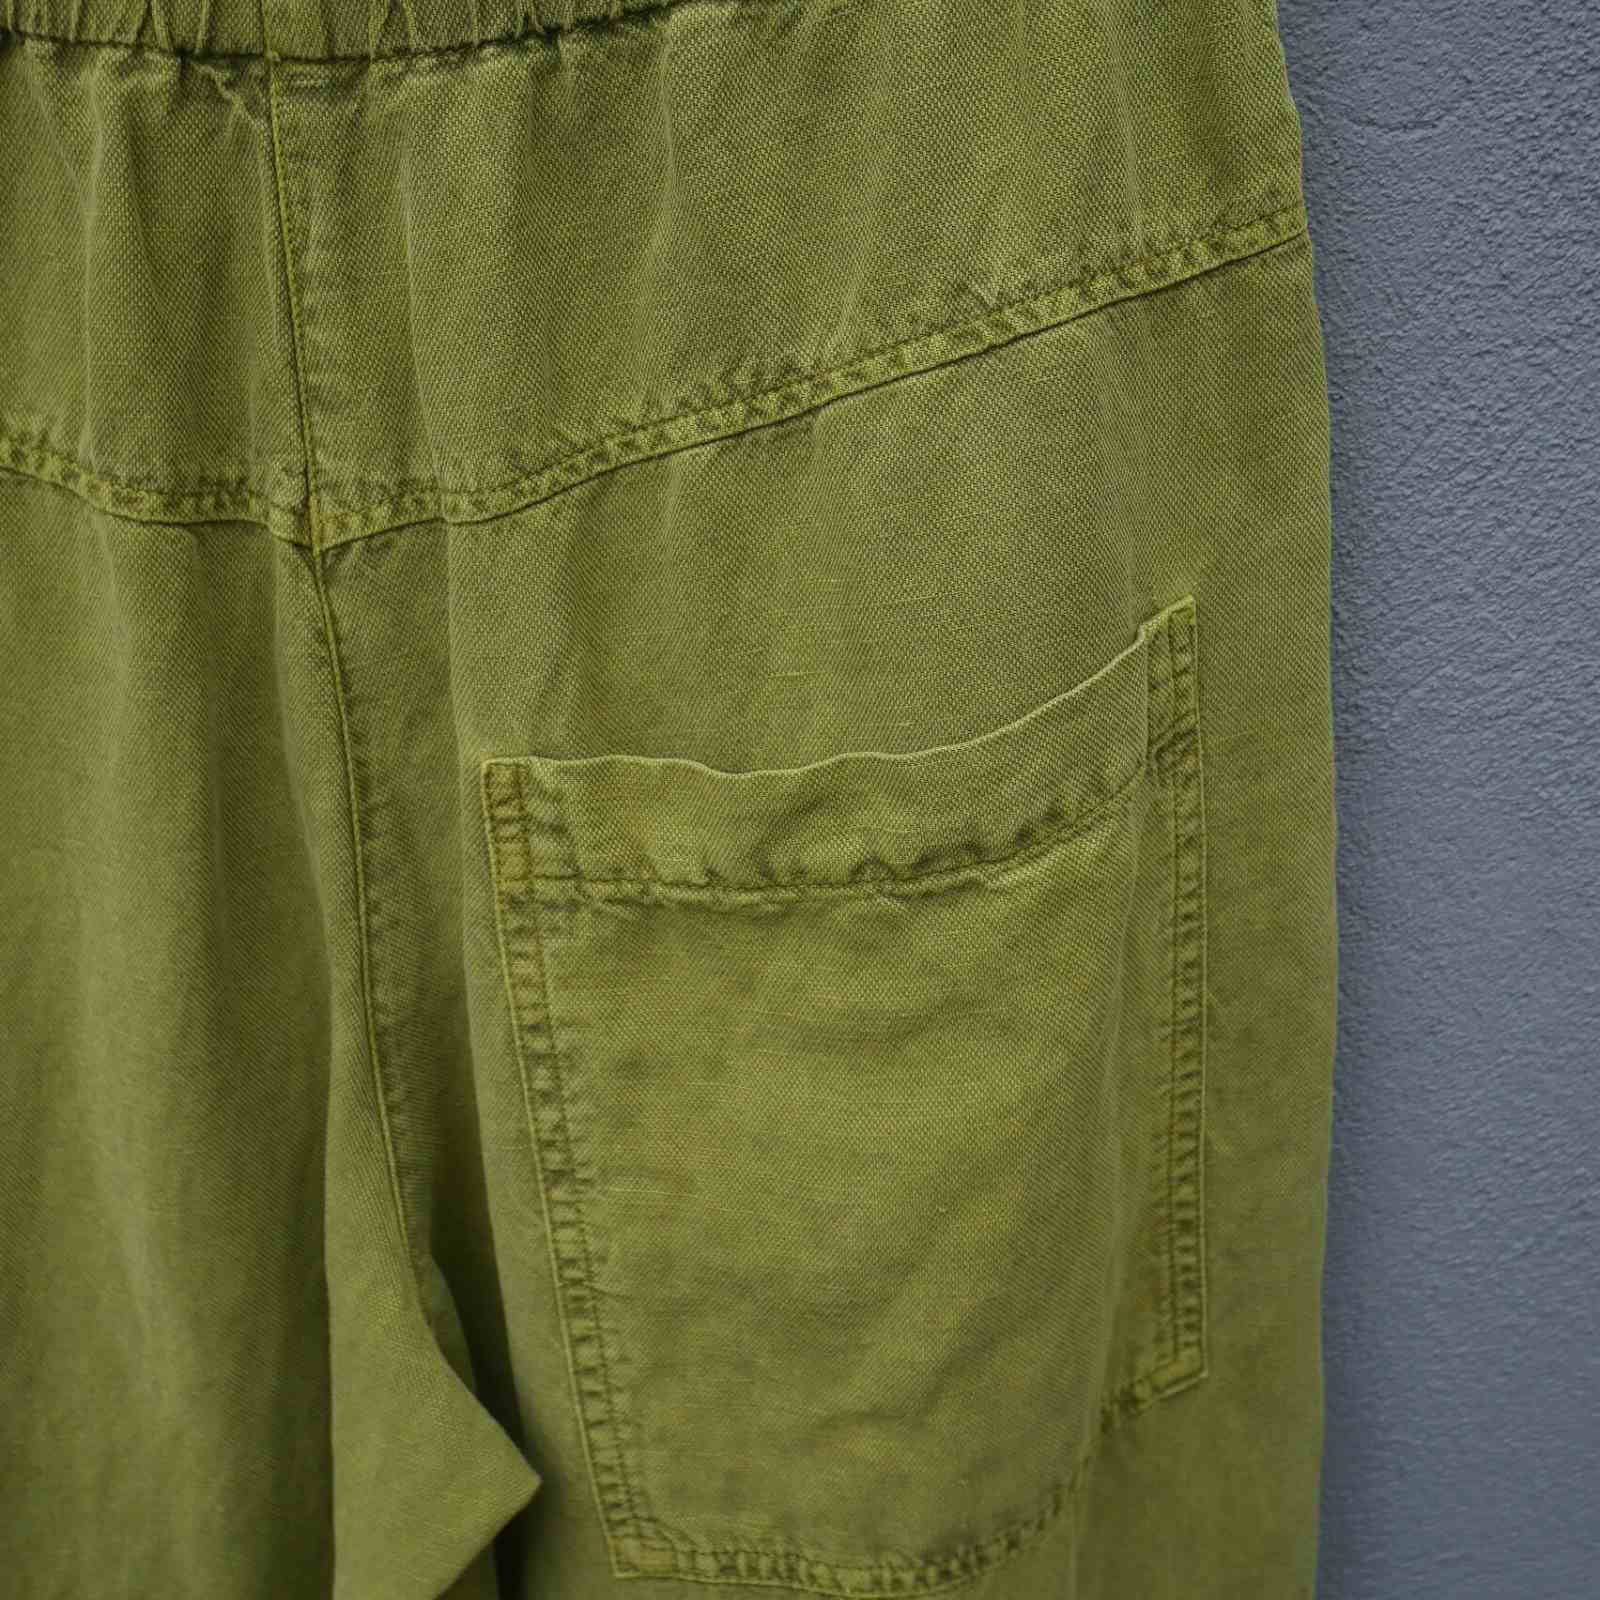 Baglomme på pistachio farvet bukser i hørblanding fra Oska, model Steja